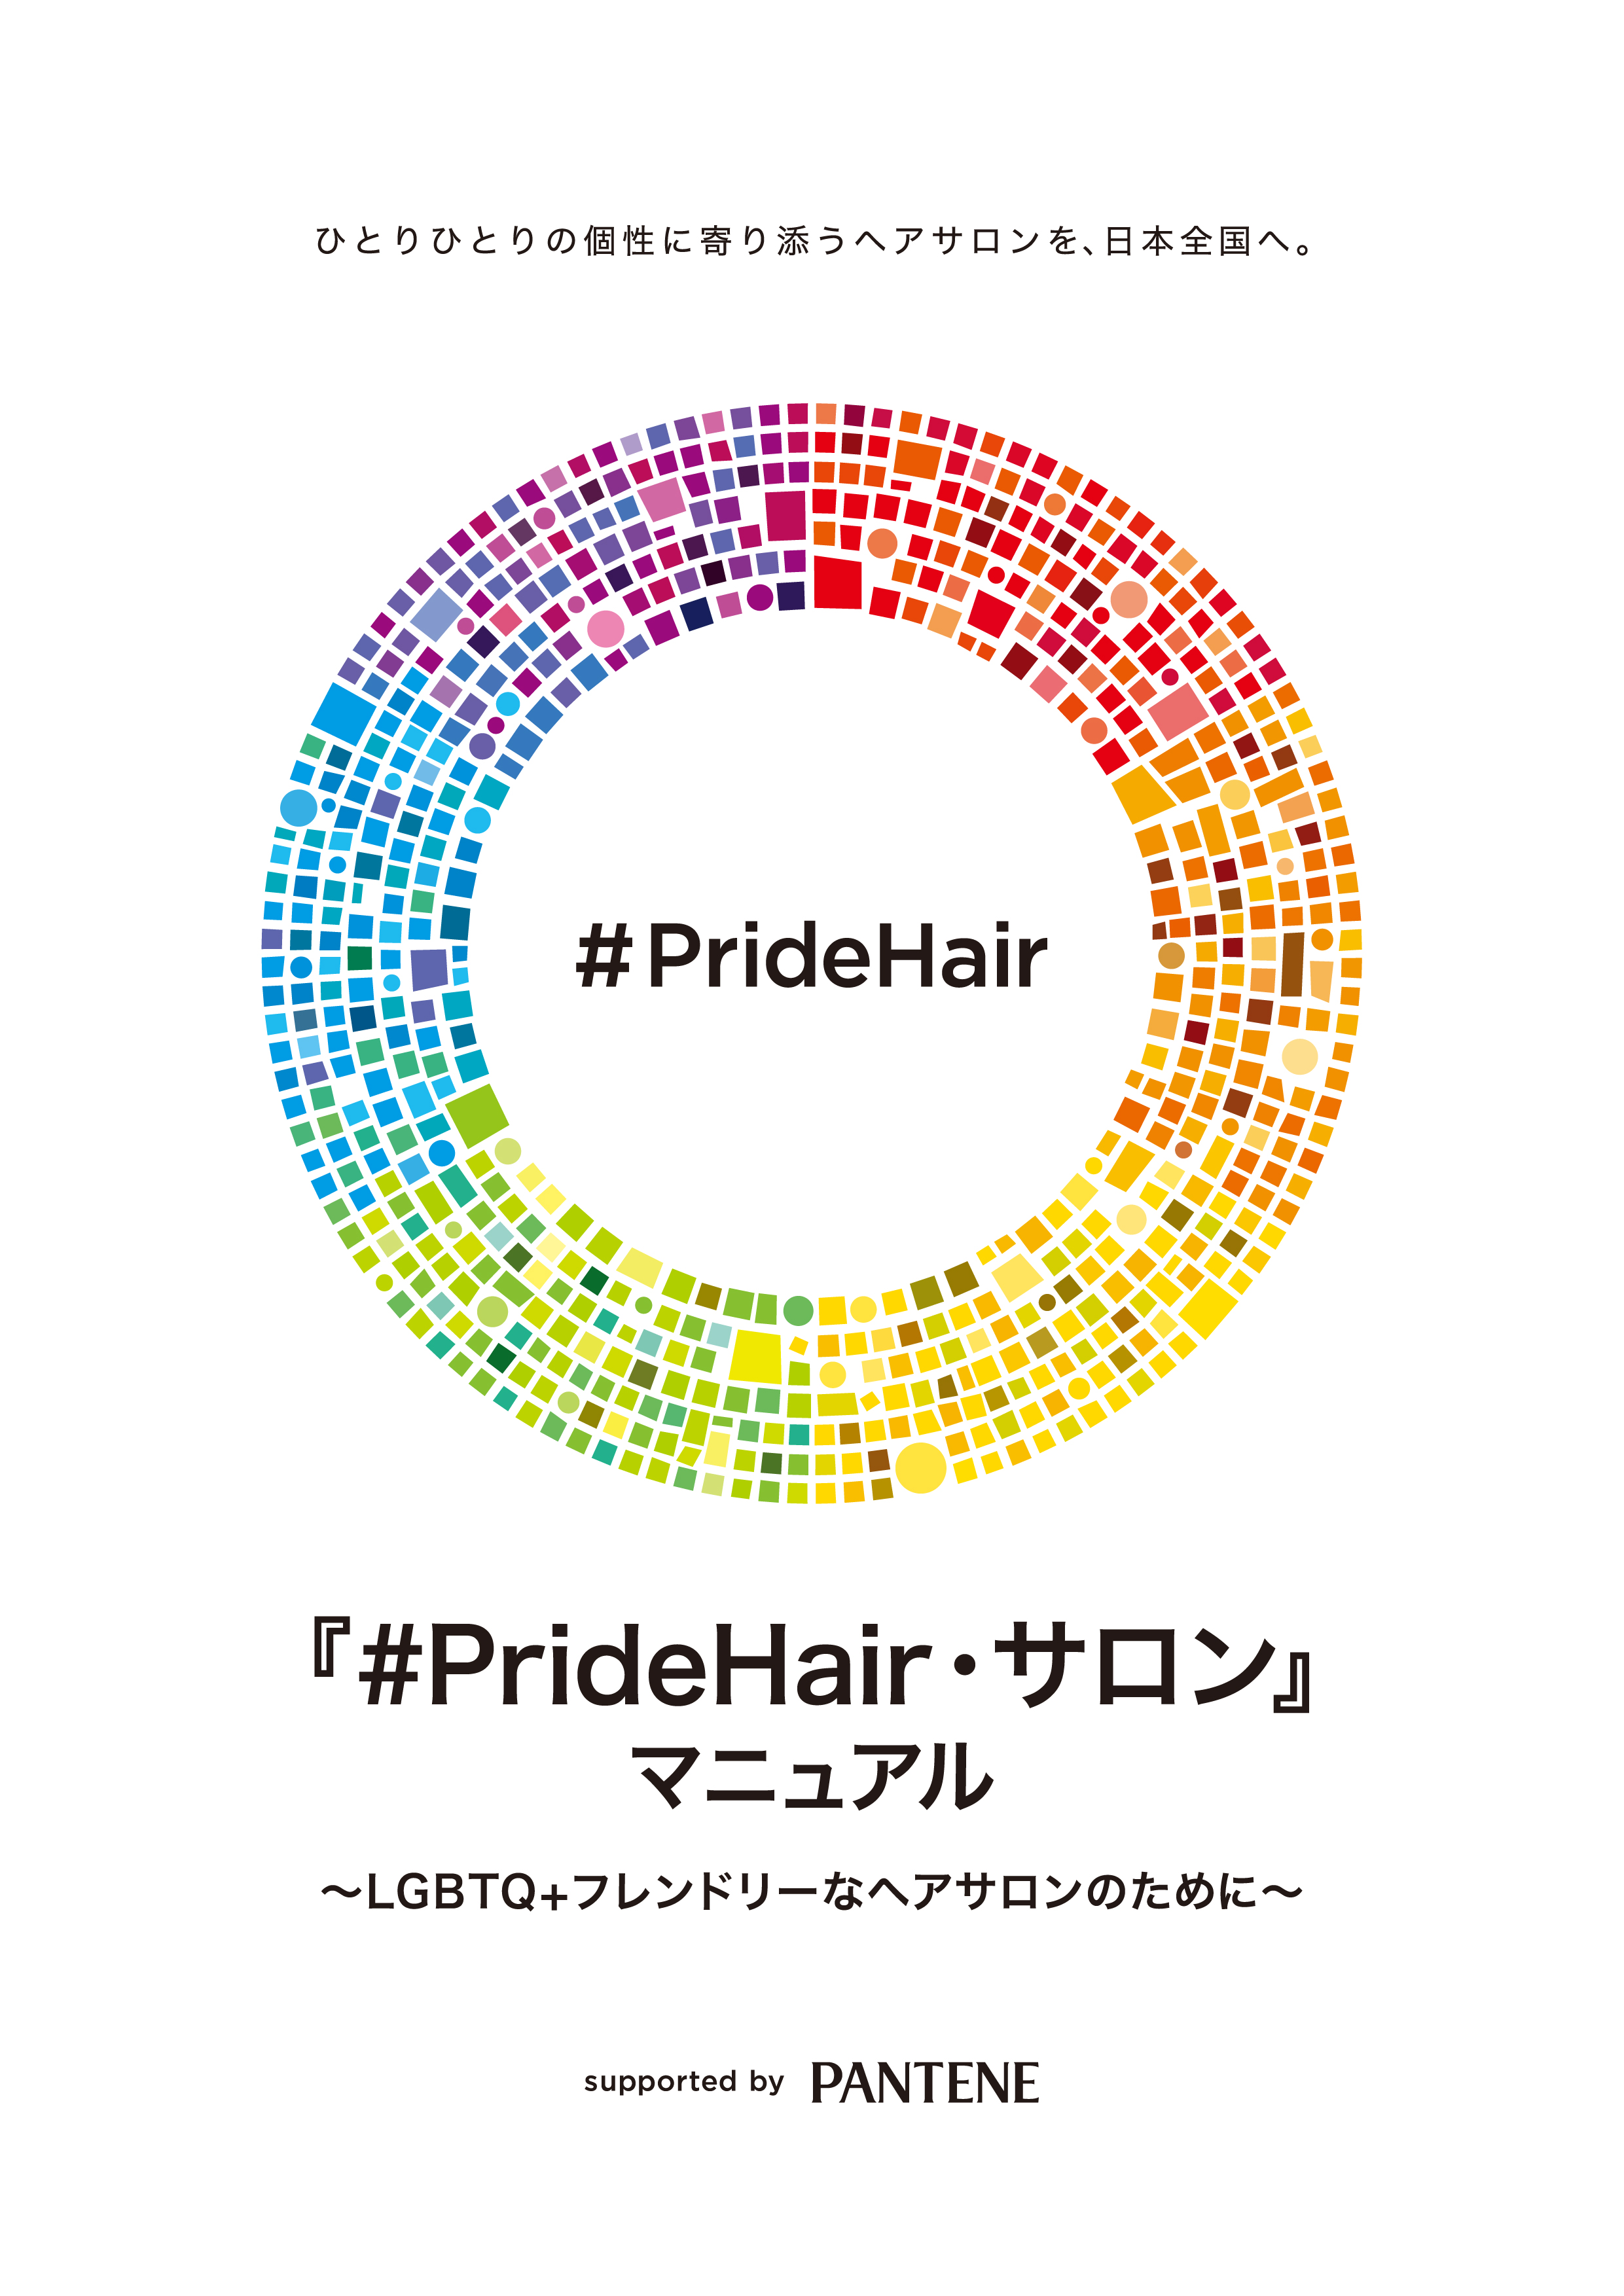 Hairwego パンテーン Pridehair サロン プロジェクト ヘアサロン向けlgbtq フレンドリーマニュアル 完成 並びに本プロジェクトへの賛同サロンの本格募集を開始 ｐ ｇジャパン合同会社のプレスリリース